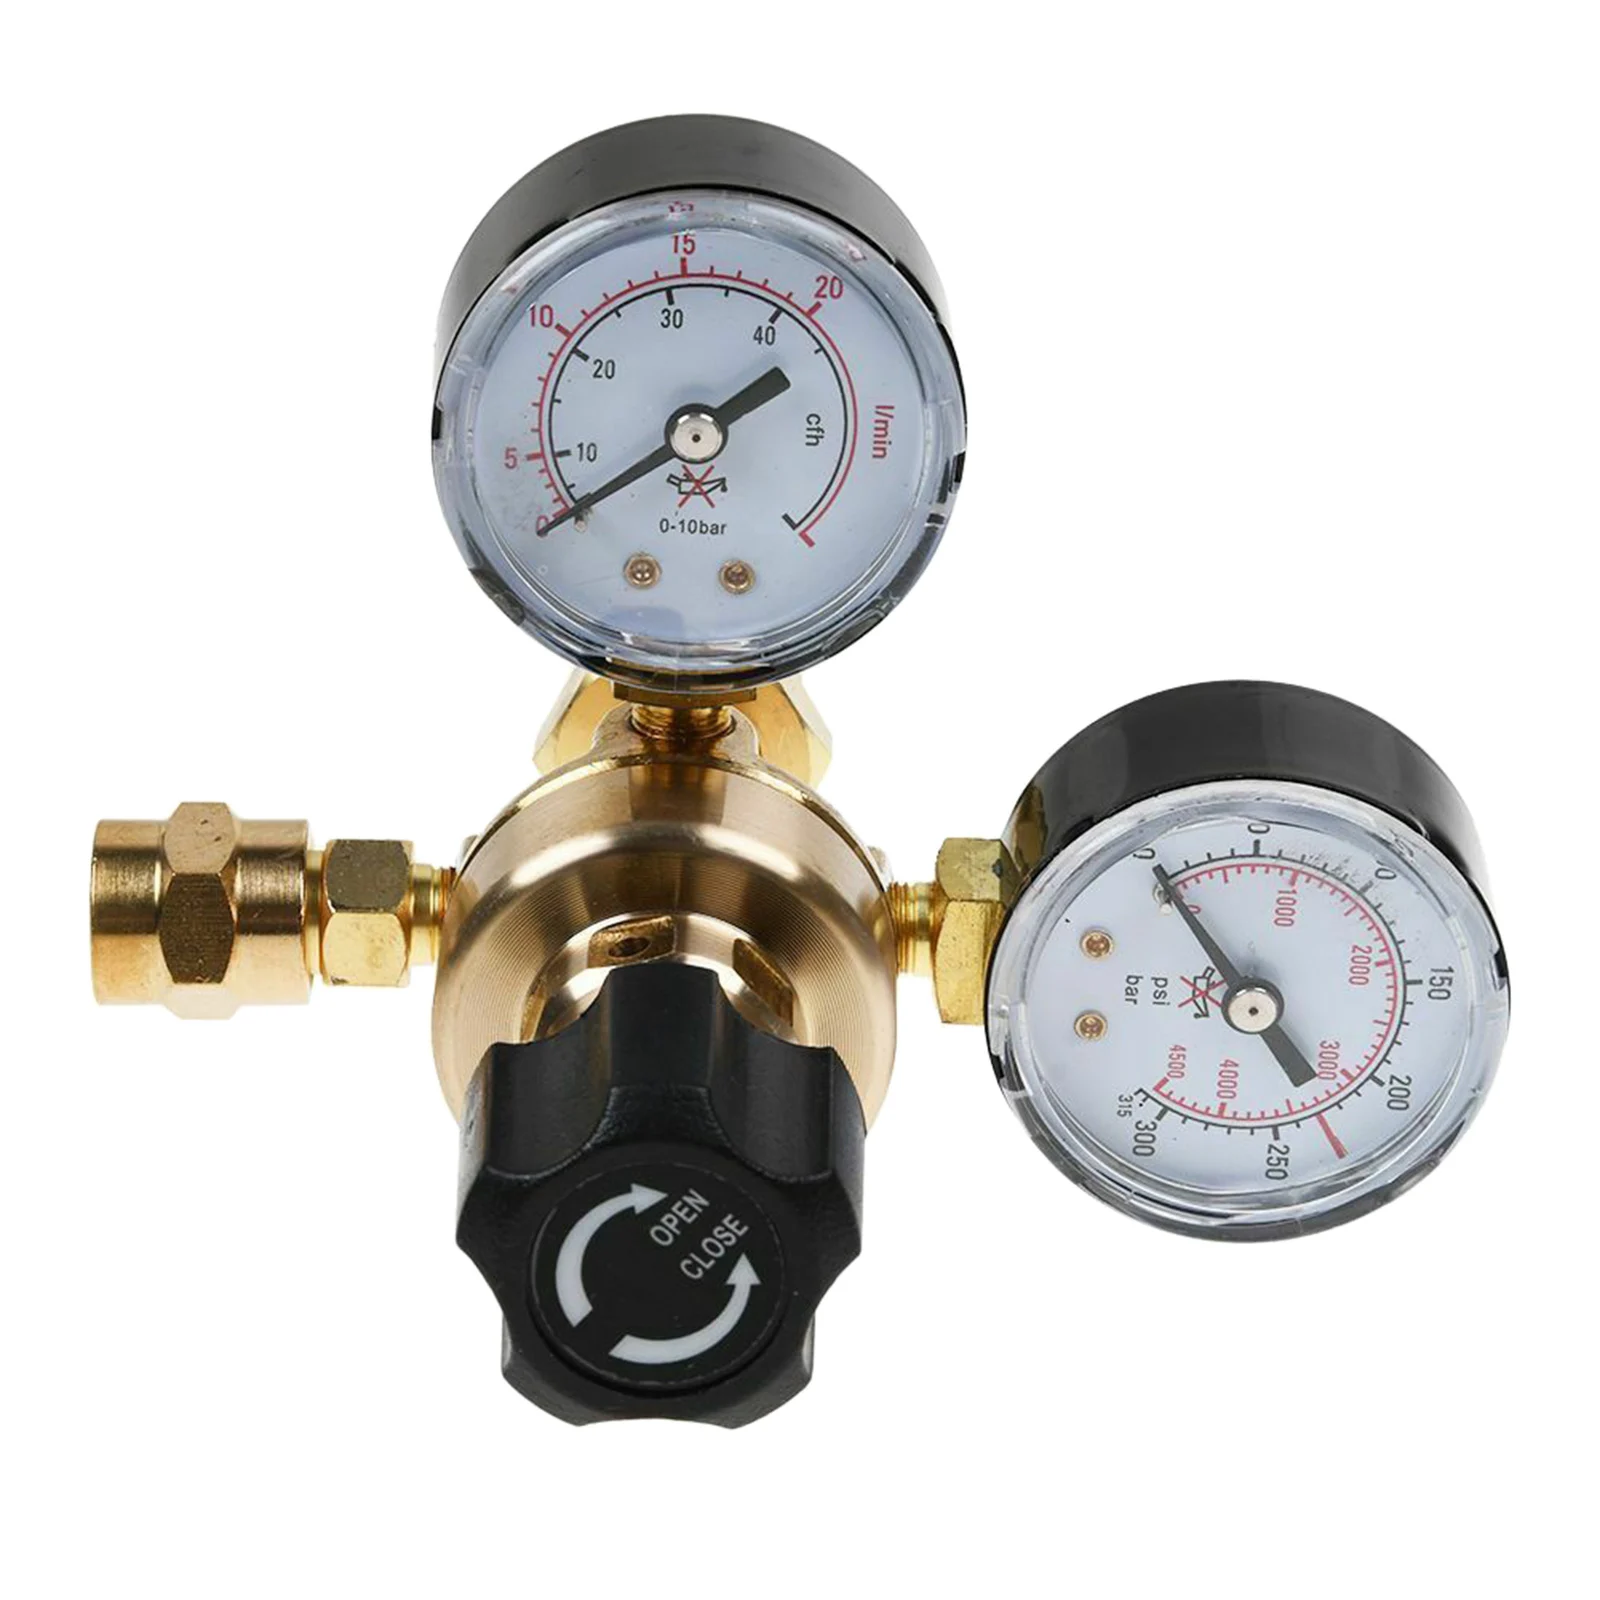 New Flow Meter Pressure Regulator Argon CO2 Pressure Reducer Pressure Reducing Valve Welding Gas Welder, Black